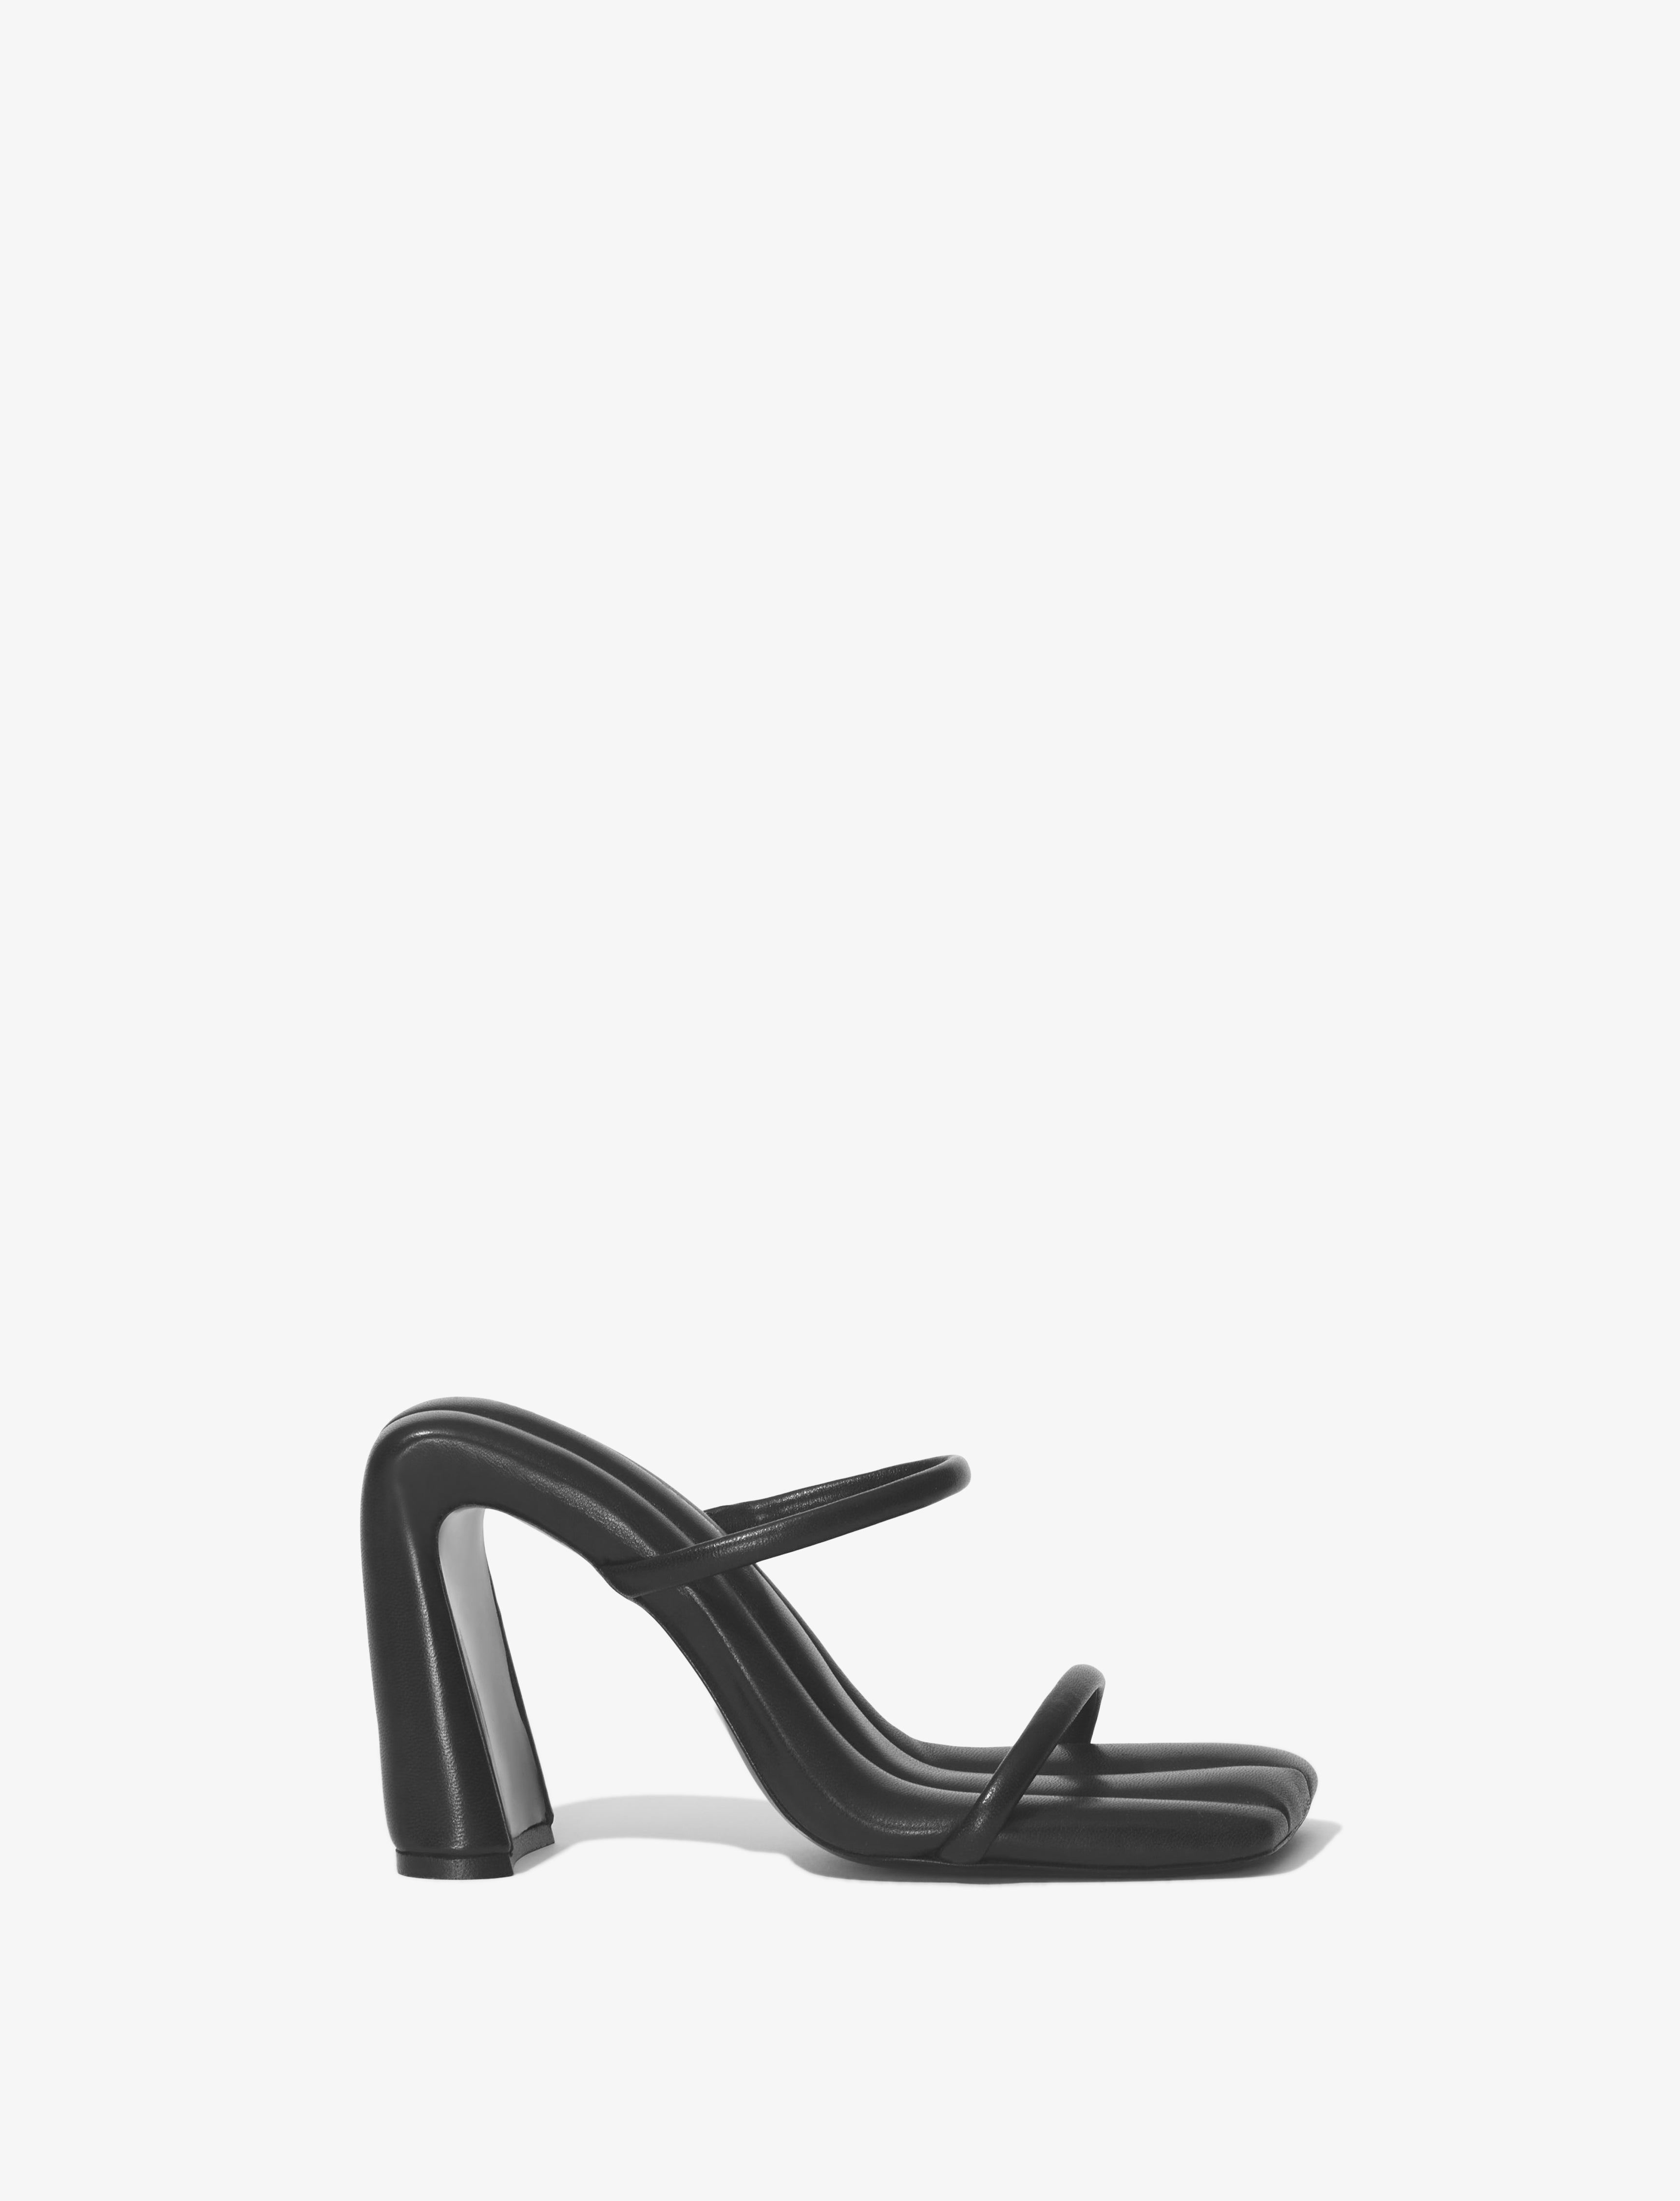 Shop Sandals | Proenza Schouler - Official Site